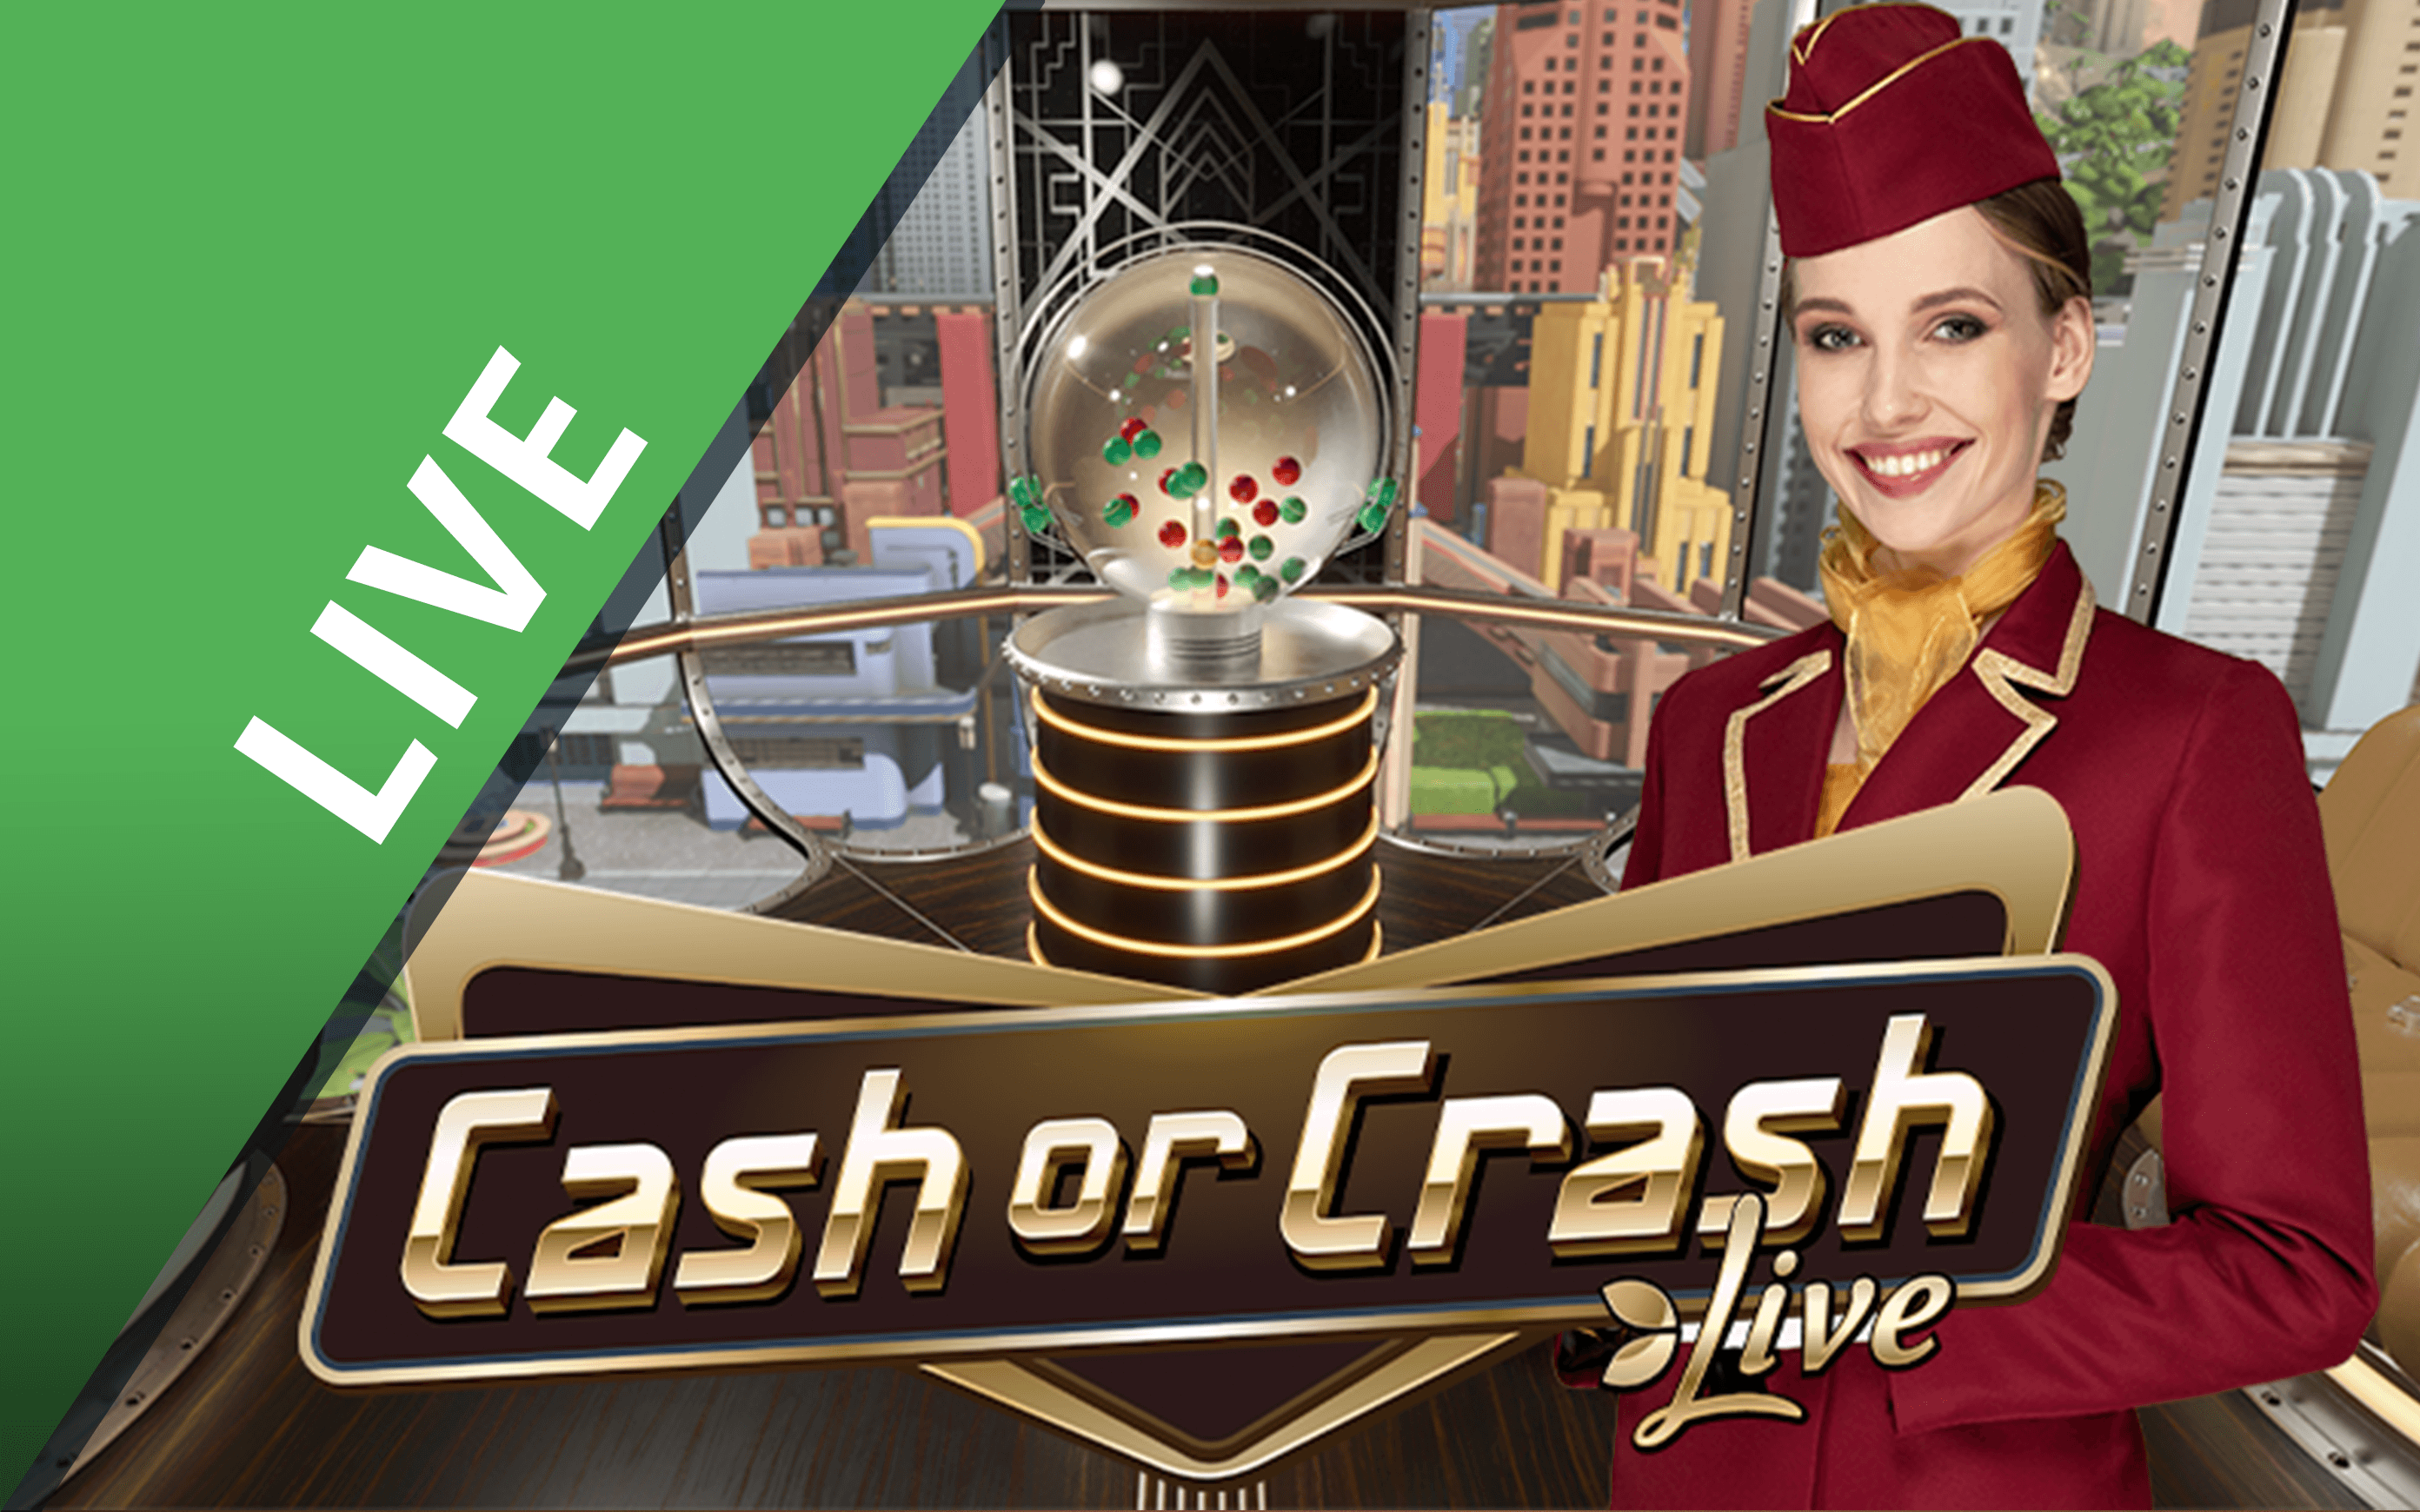 เล่น Cash or Crash บนคาสิโนออนไลน์ Starcasino.be